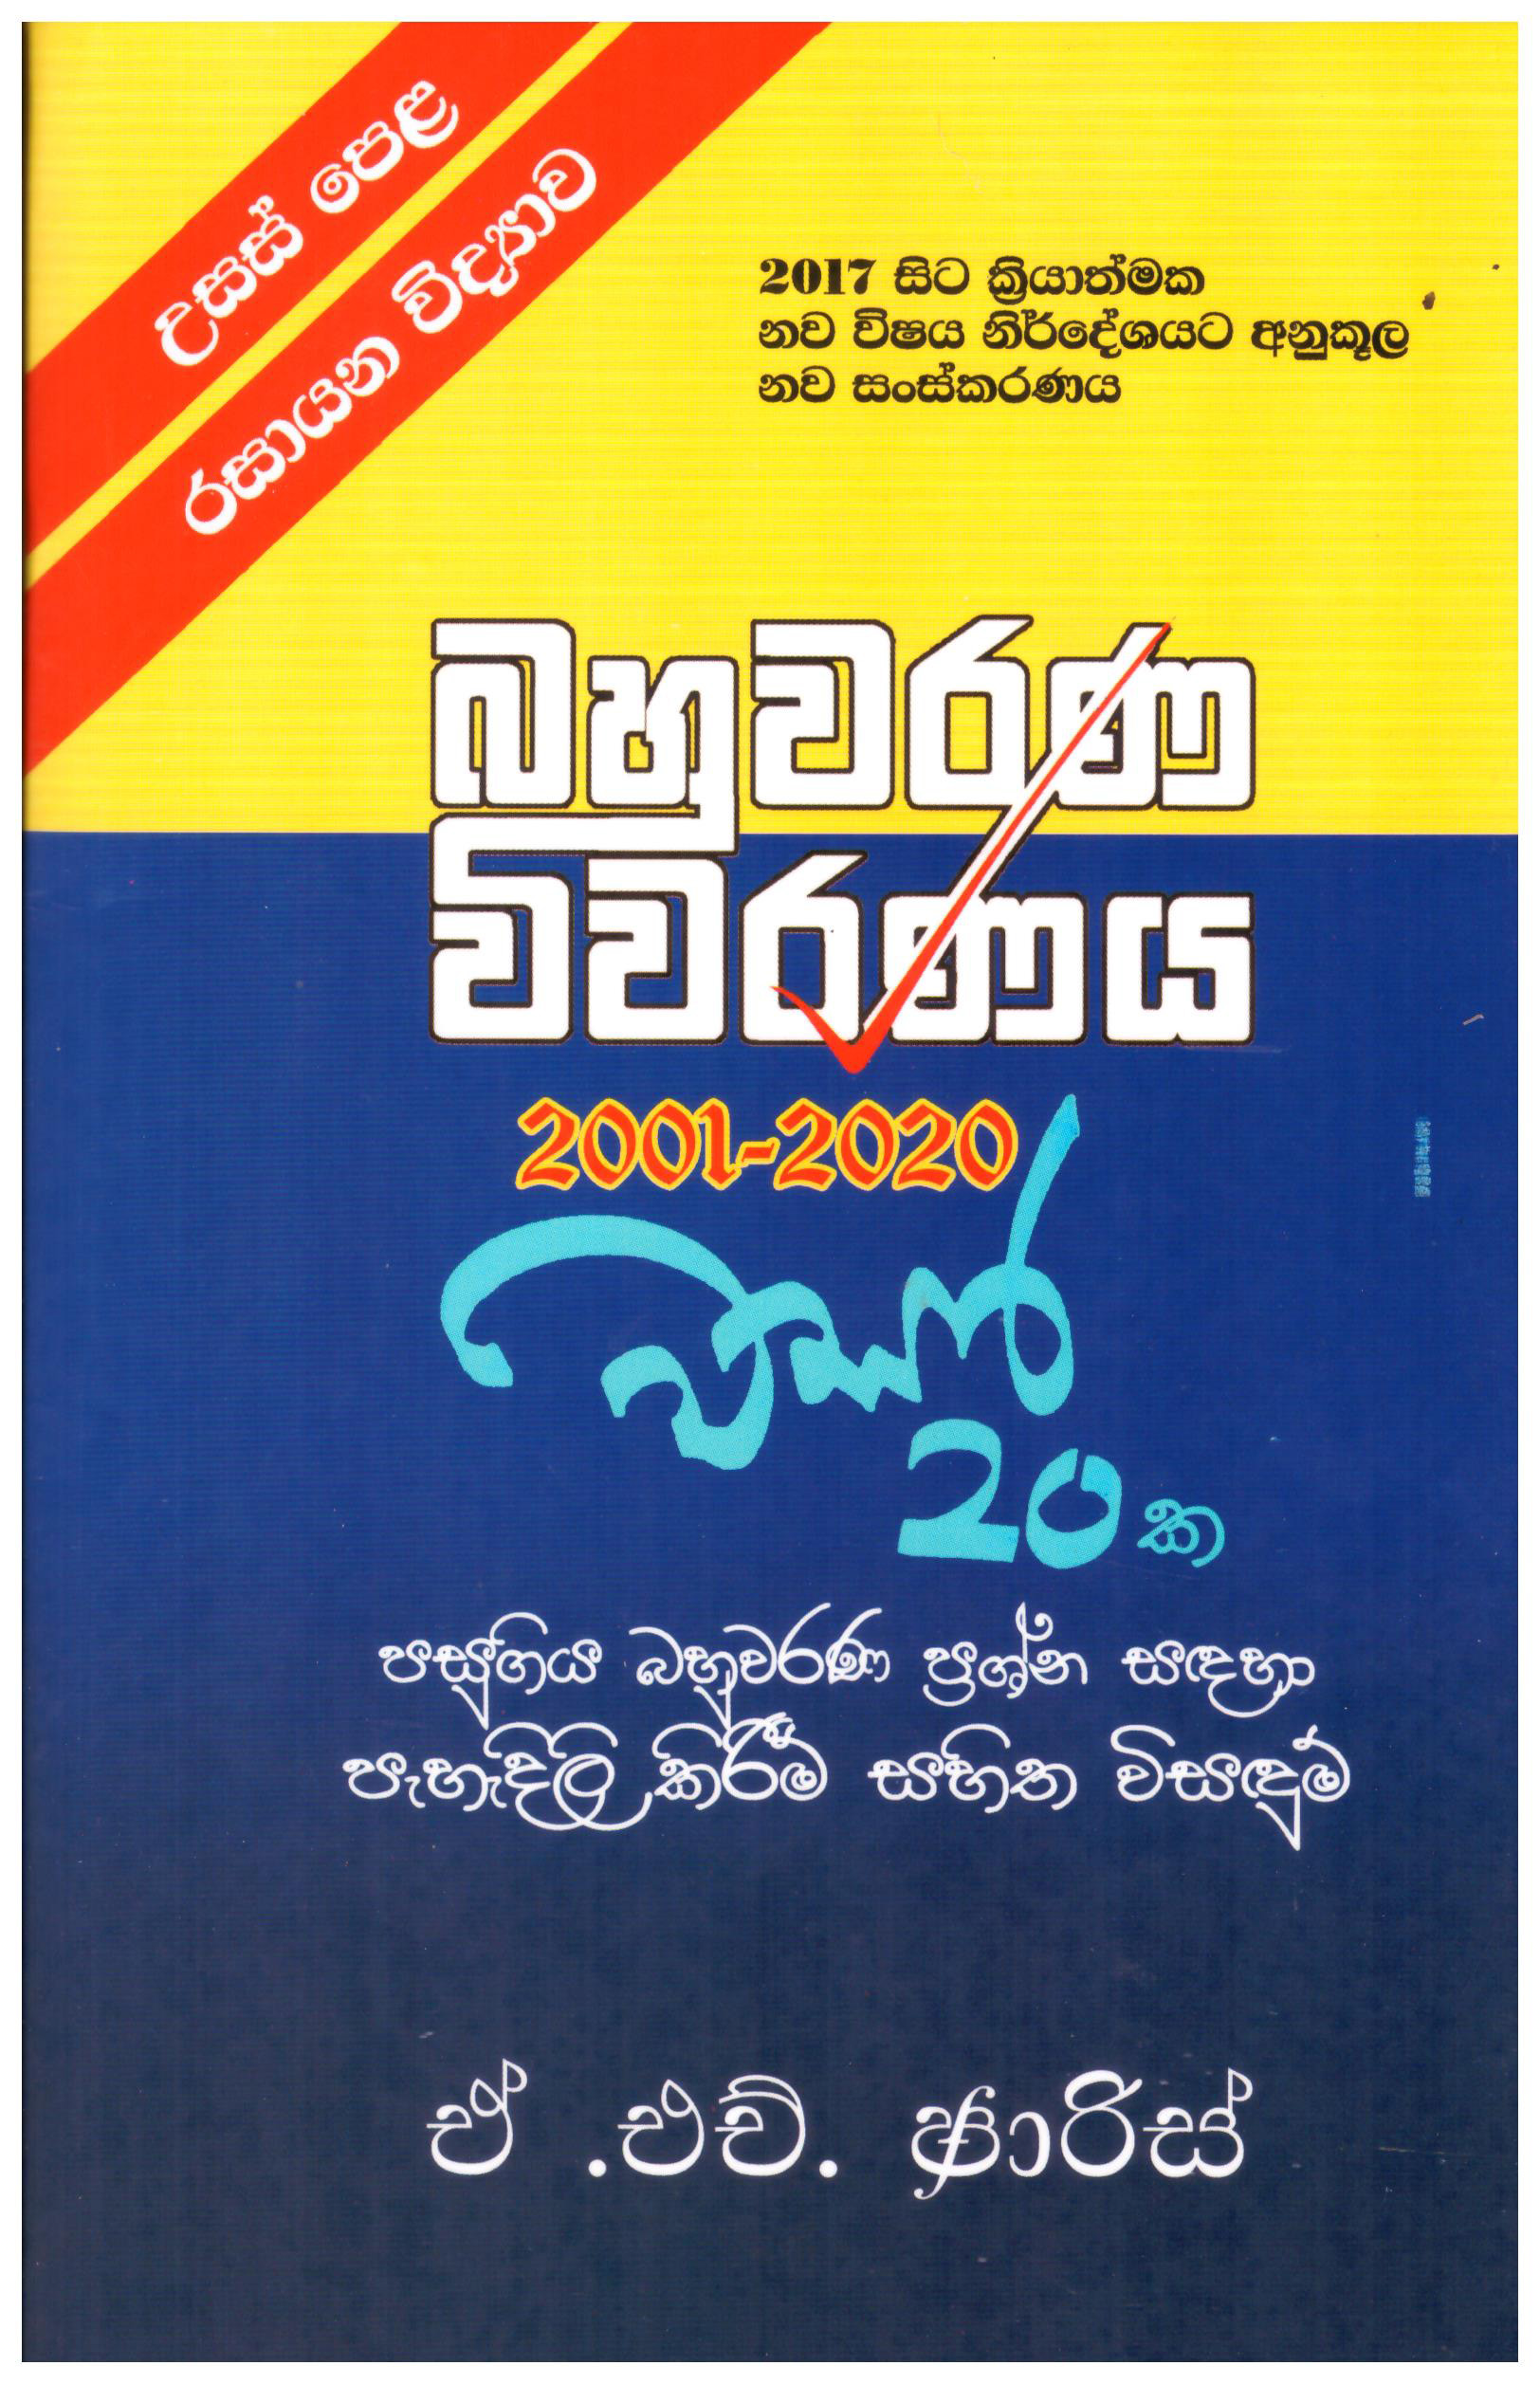 A/L Rasayana Vidyawa Bahuwarana Vivaranaya 2001 - 2020